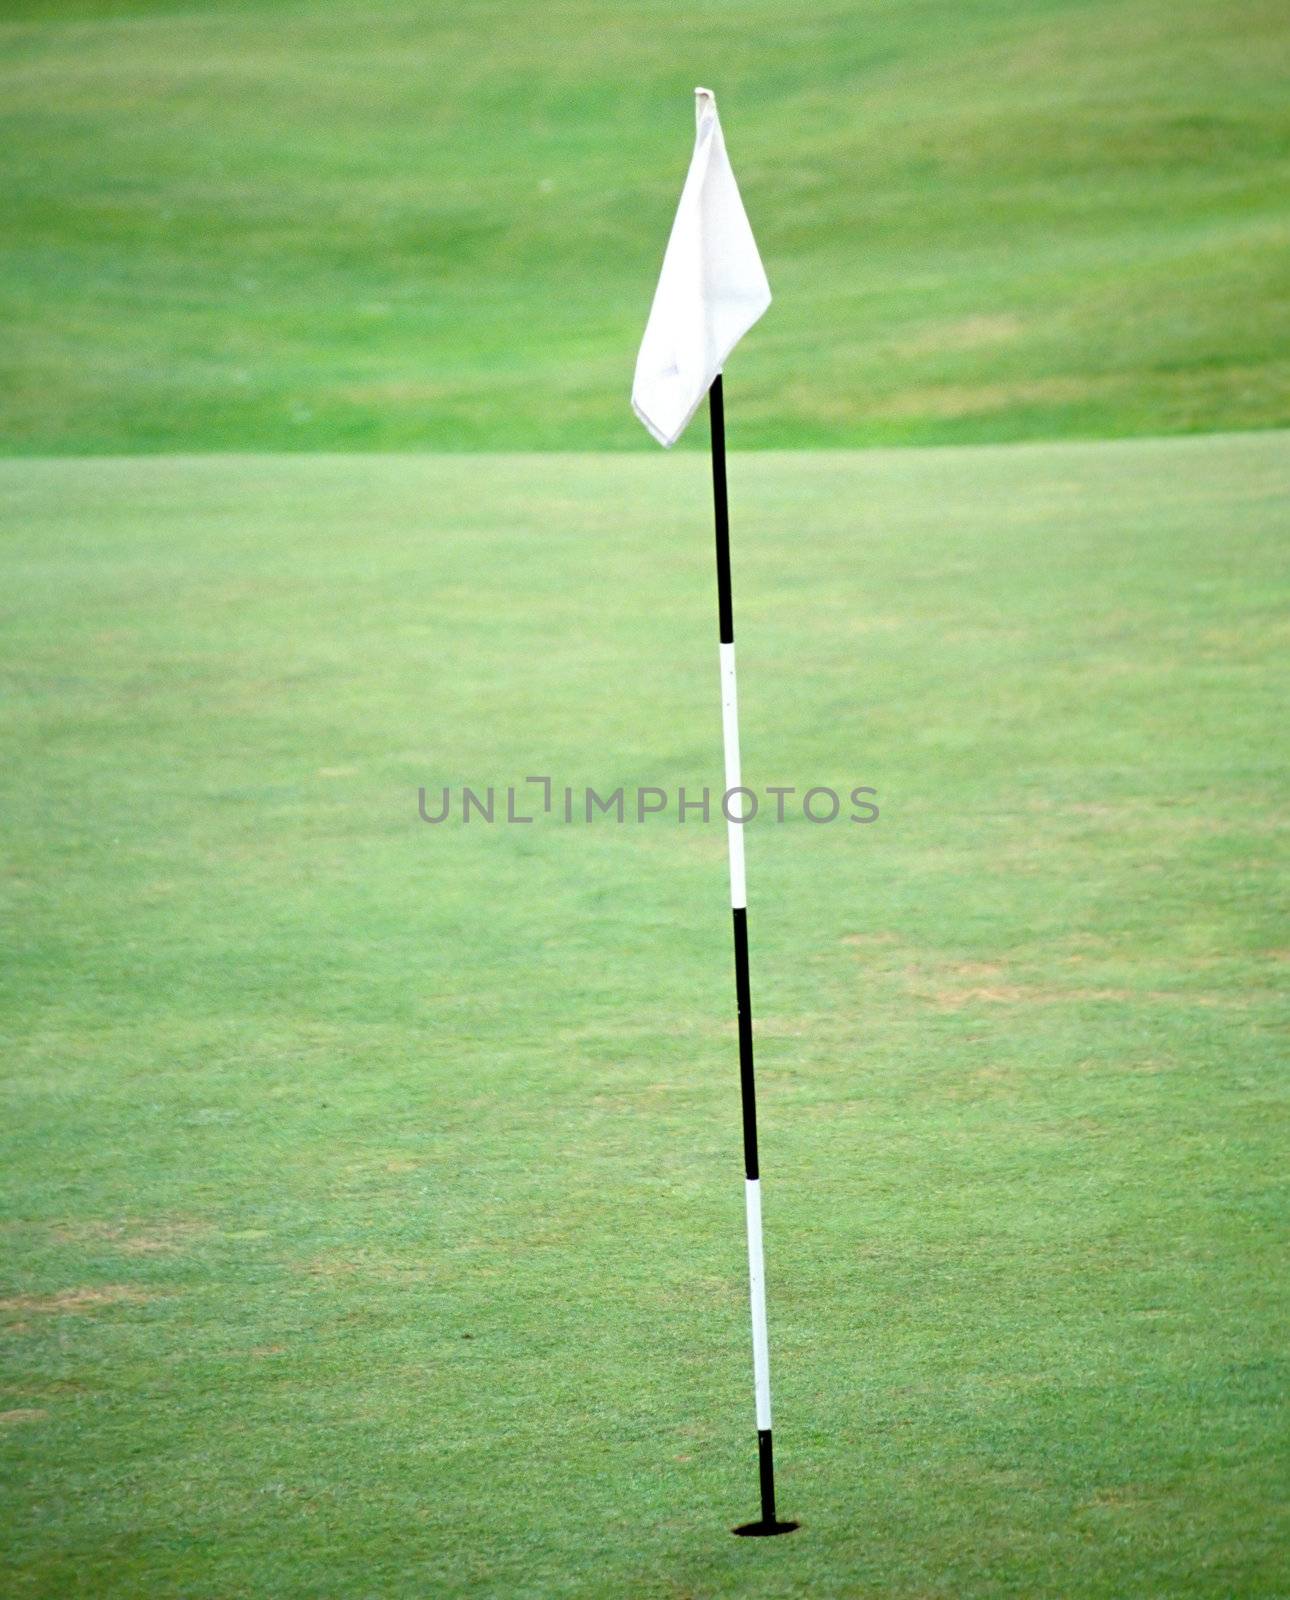 Golf pole flag on the fairway.